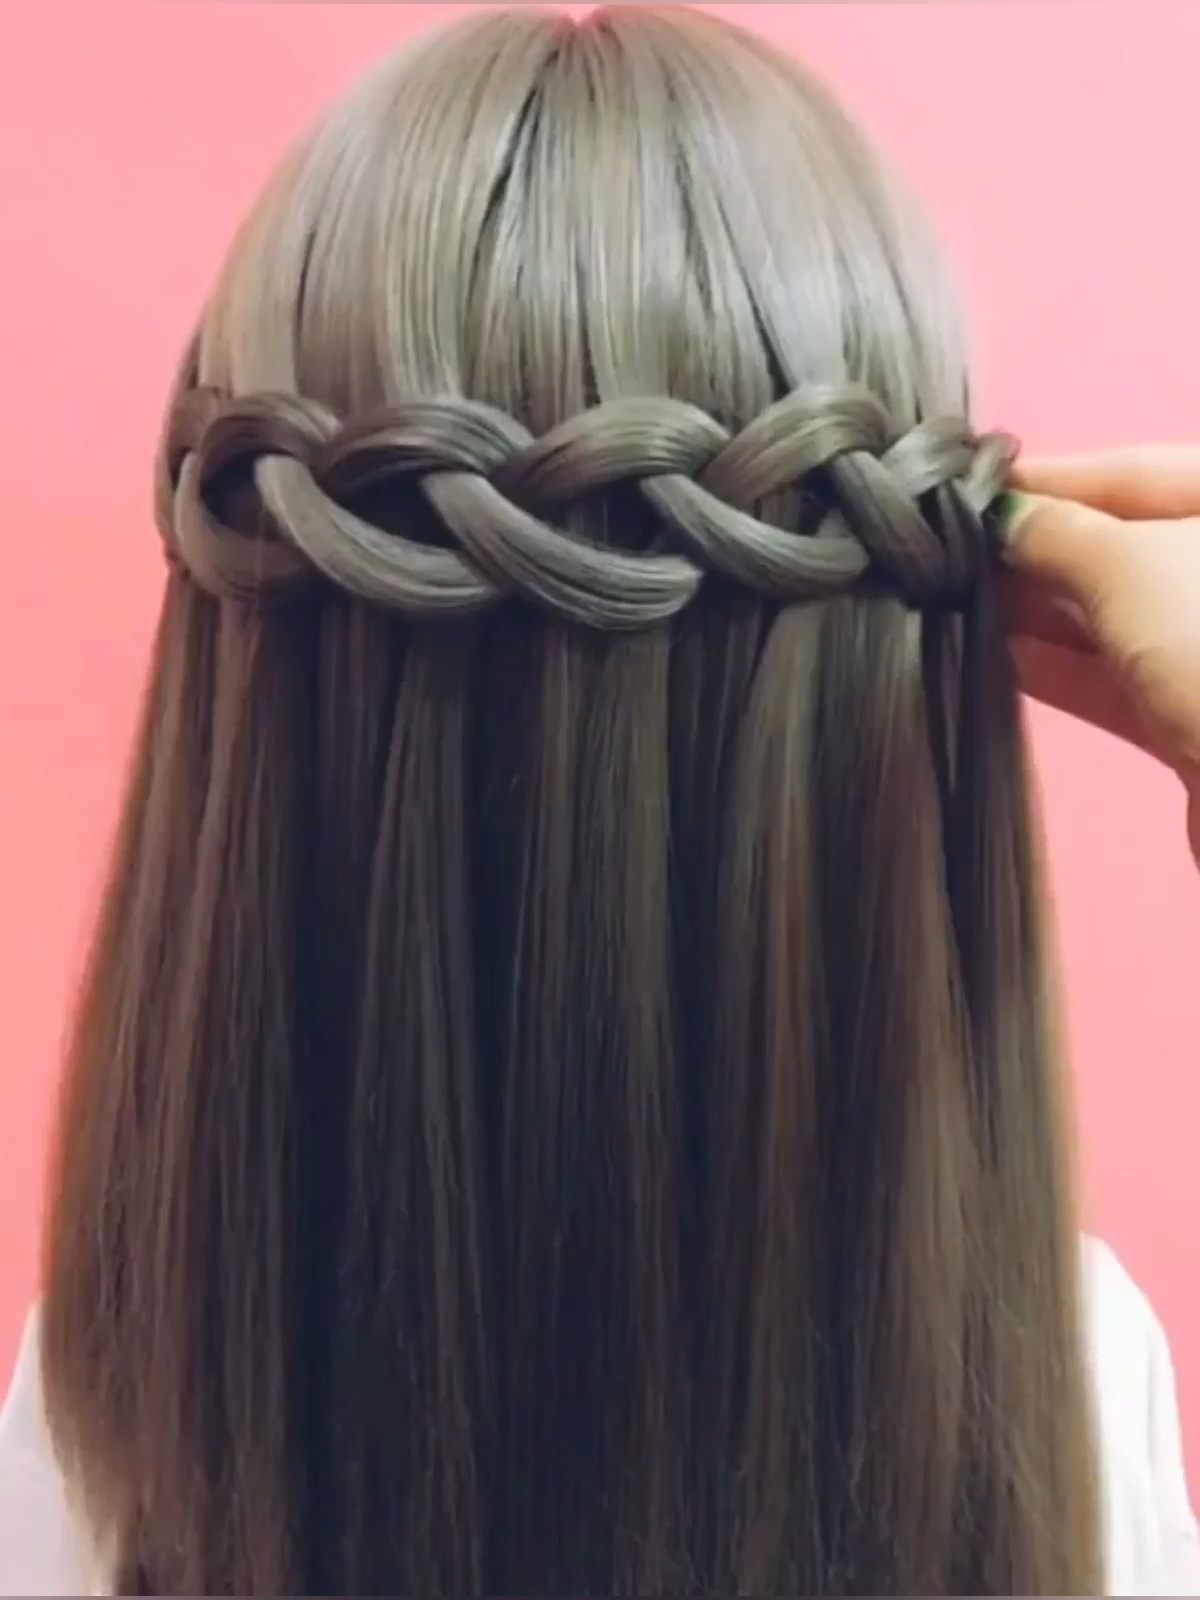 25+ cute and easy hairstyles | braided hairstyles | hair tutorials videos -   25 hair Videos braids ideas